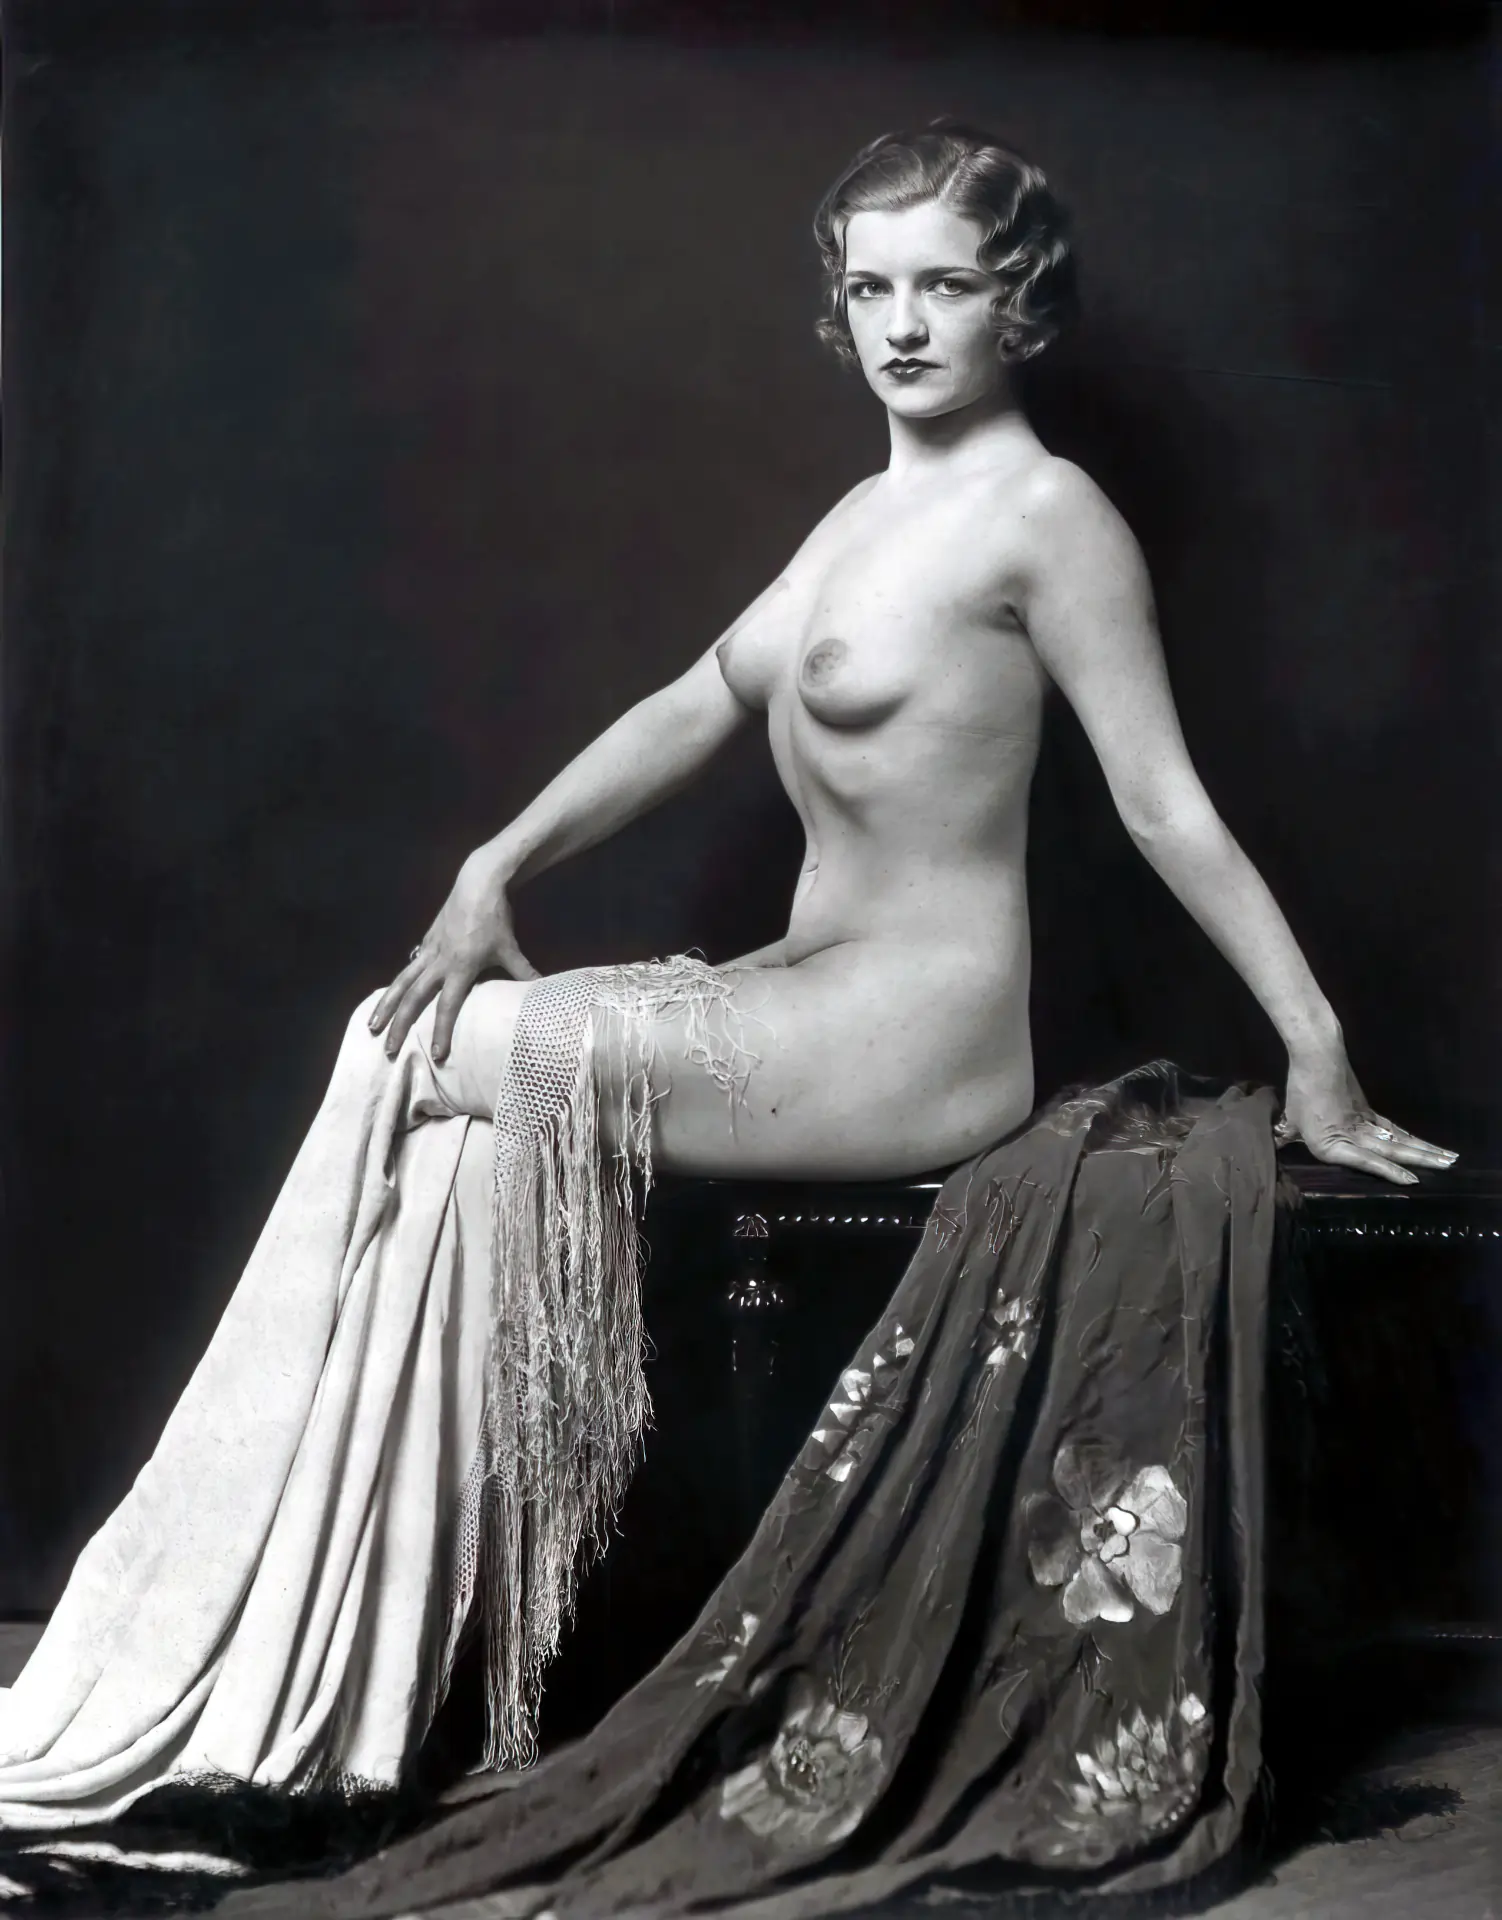 Black &white photos explicite mature nude erotic